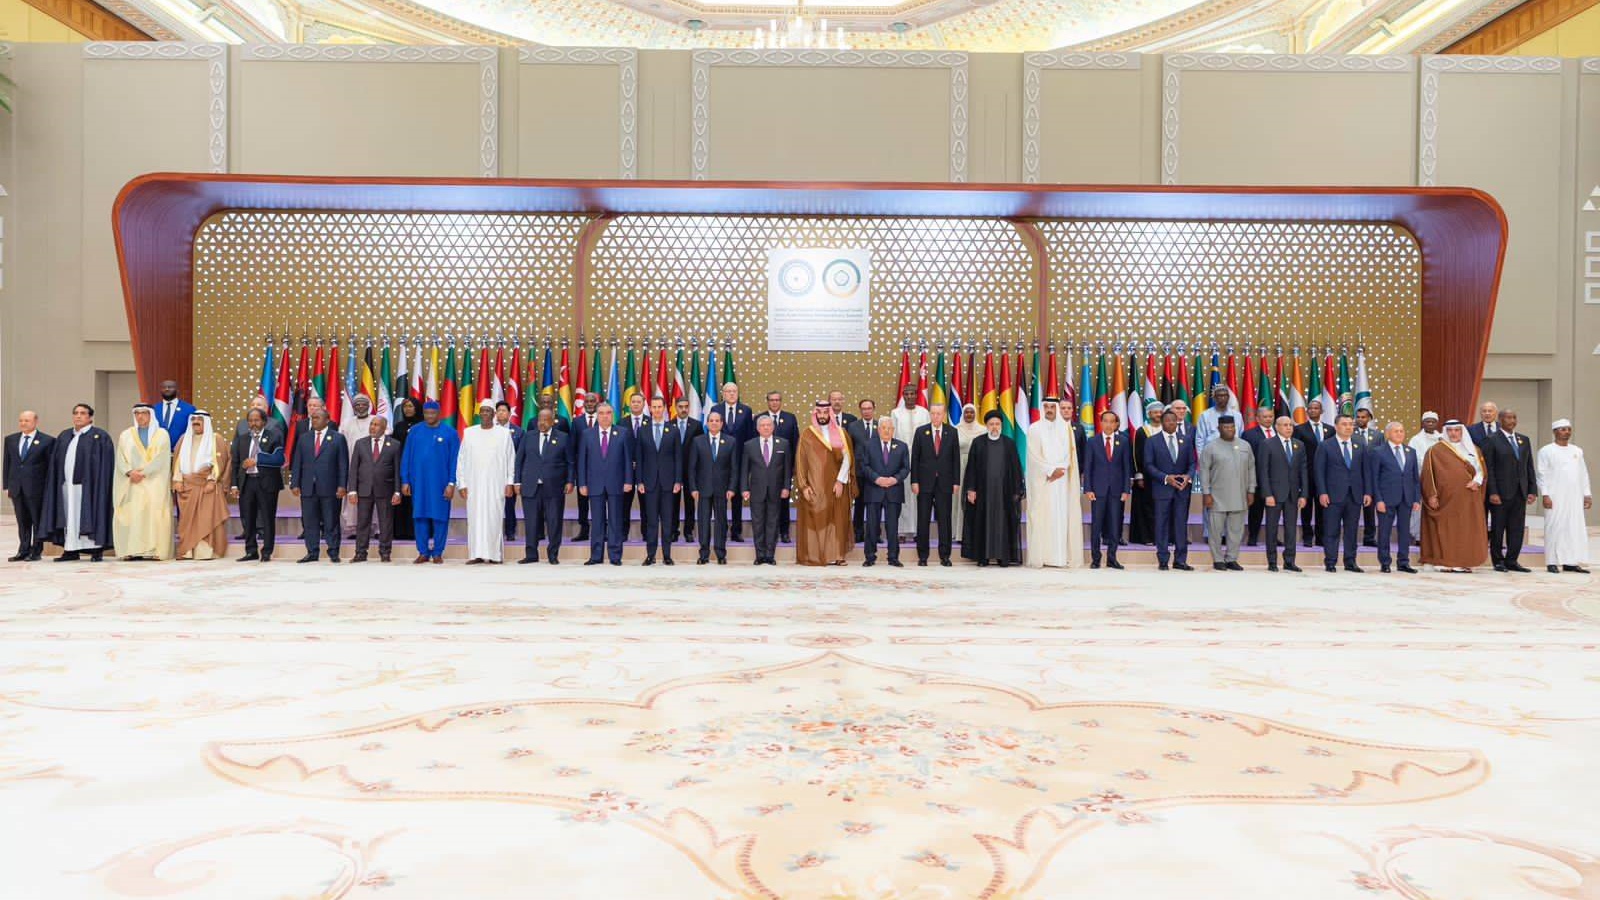 صورة جماعية للقادة المشاركين في القمة العربية - الإسلامية في الرياض (واس)